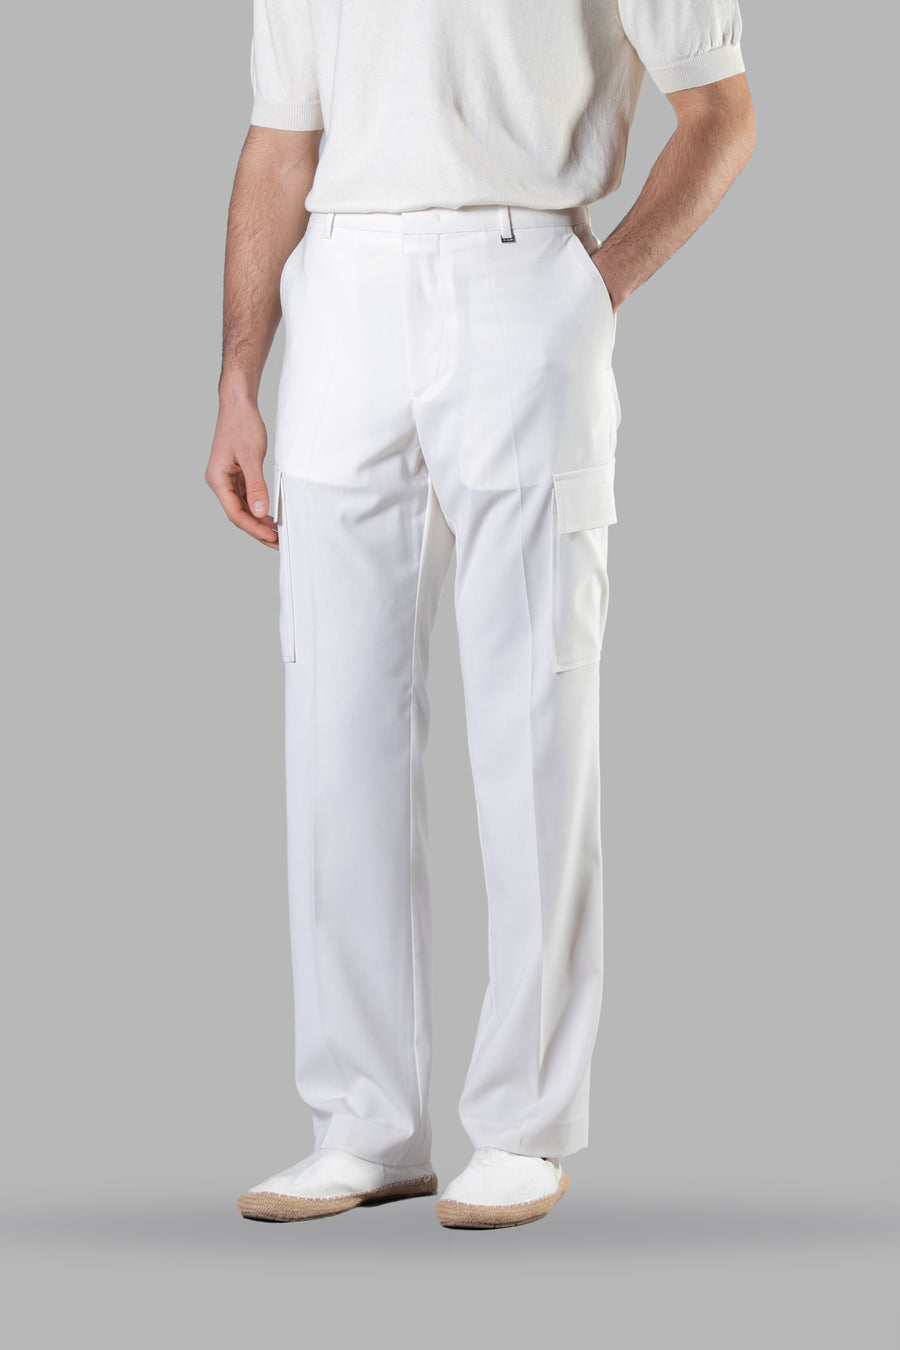 Pantalone fondo ampio con tasconi applicati - Panna